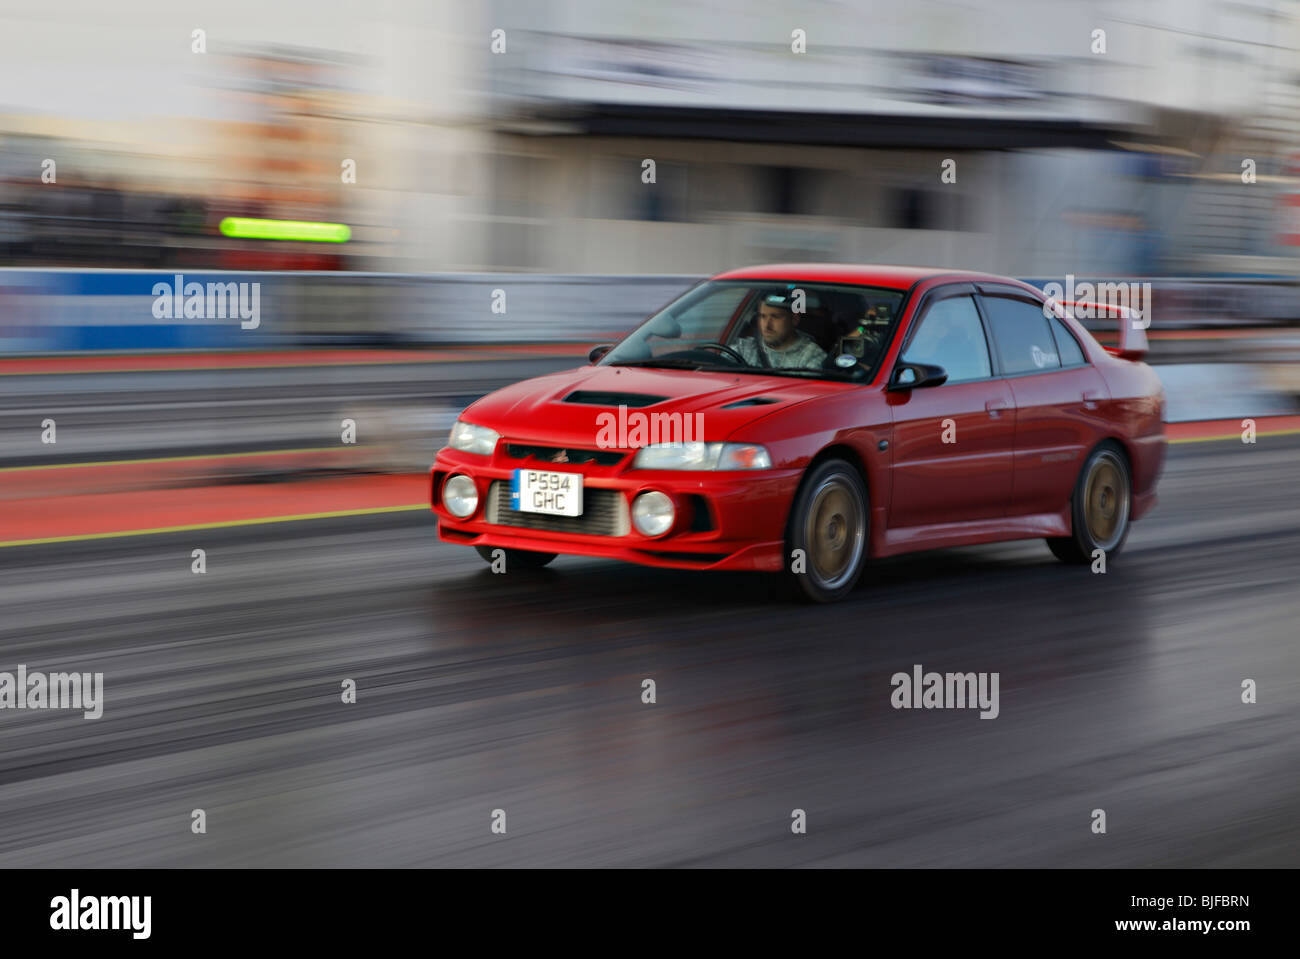 Racing Mitsubishi Evolution at Santa pod. Stock Photo